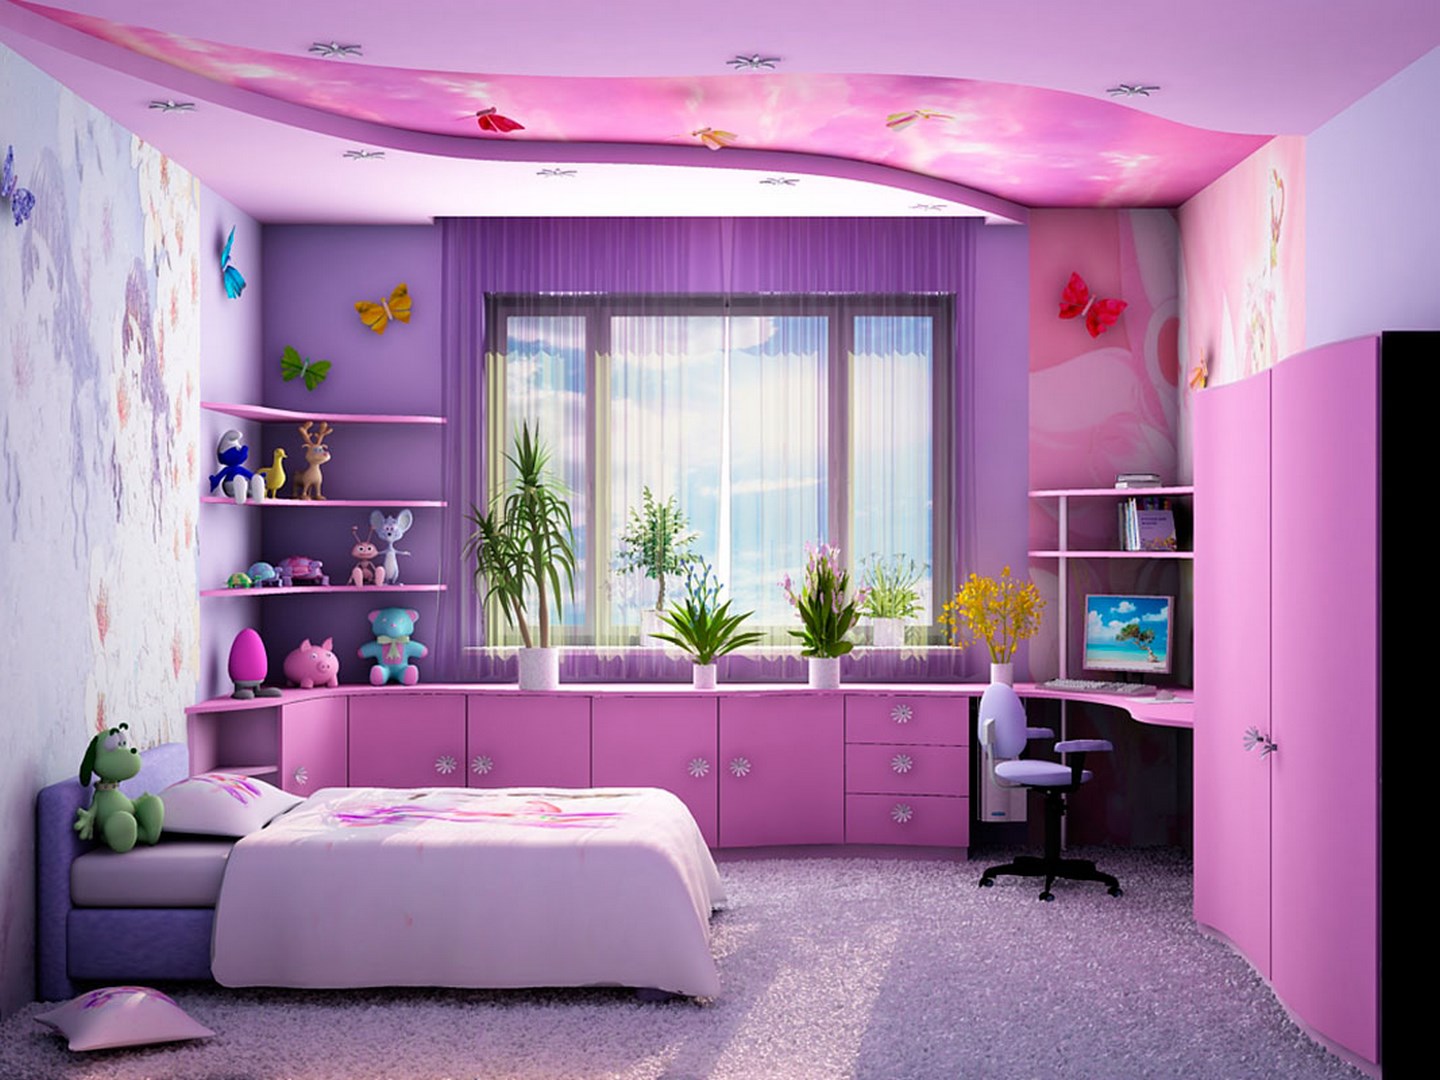 Bagian Dalam Ruangan Besar Dengan Warna Ungu Muda Krem Kombinasi Warna Yang Sempurna Dengan Warna Ungu Kombinasi Warna Ungu Di Interior